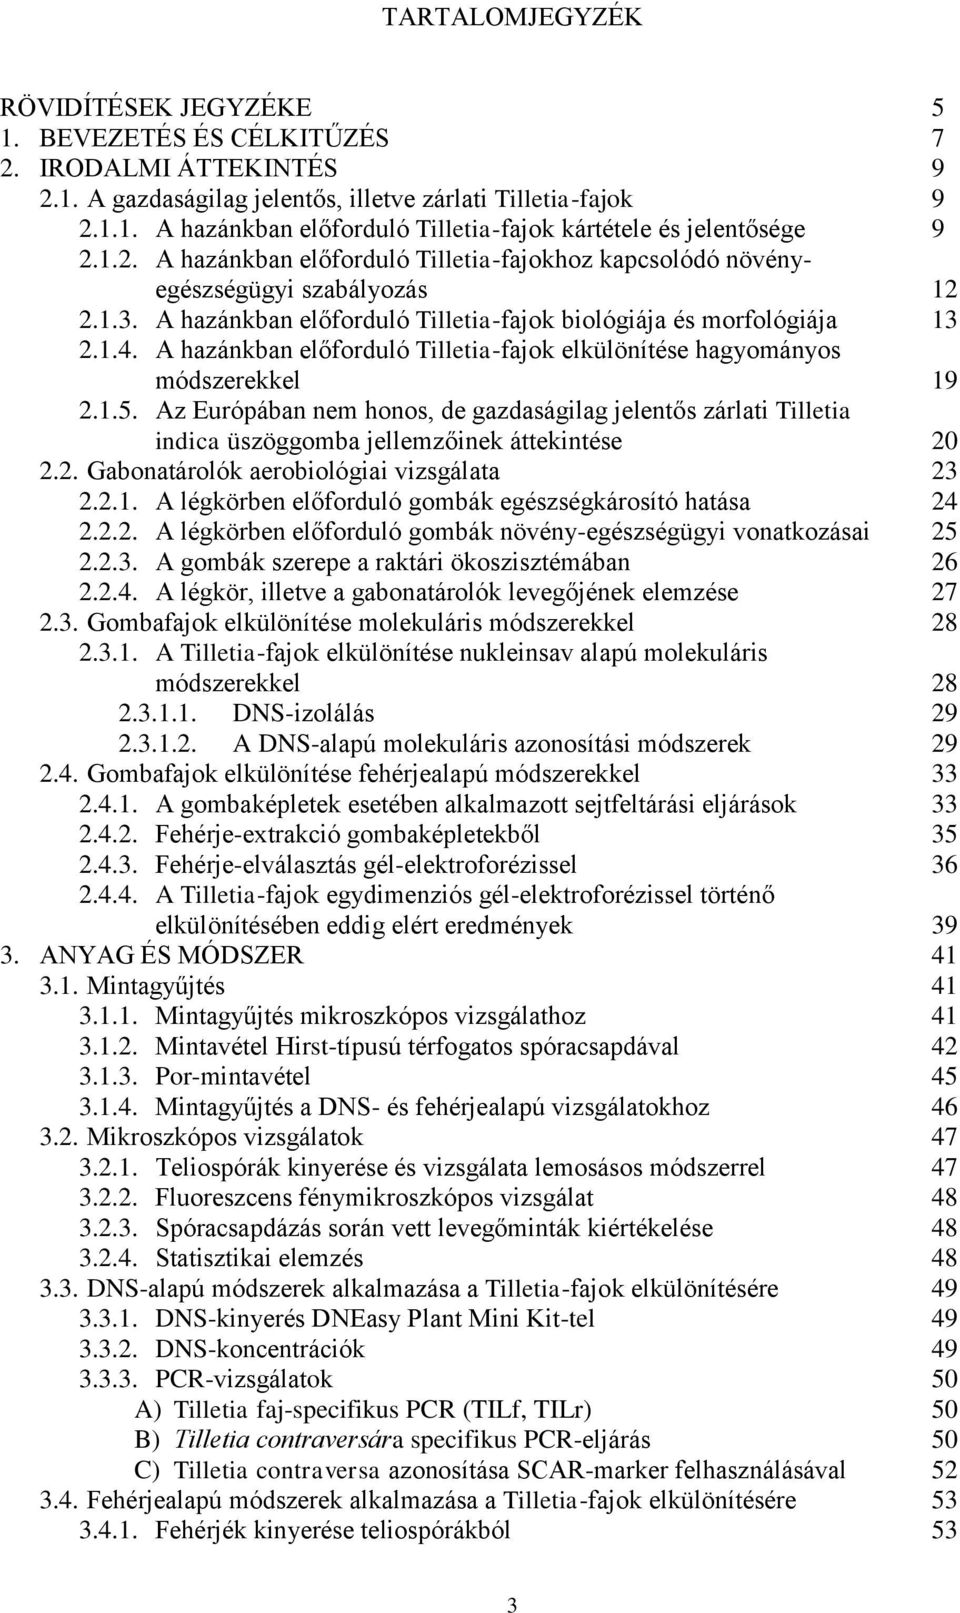 A hazánkban előforduló Tilletia-fajok elkülönítése hagyományos módszerekkel 19 2.1.5. Az Európában nem honos, de gazdaságilag jelentős zárlati Tilletia indica üszöggomba jellemzőinek áttekintése 20 2.